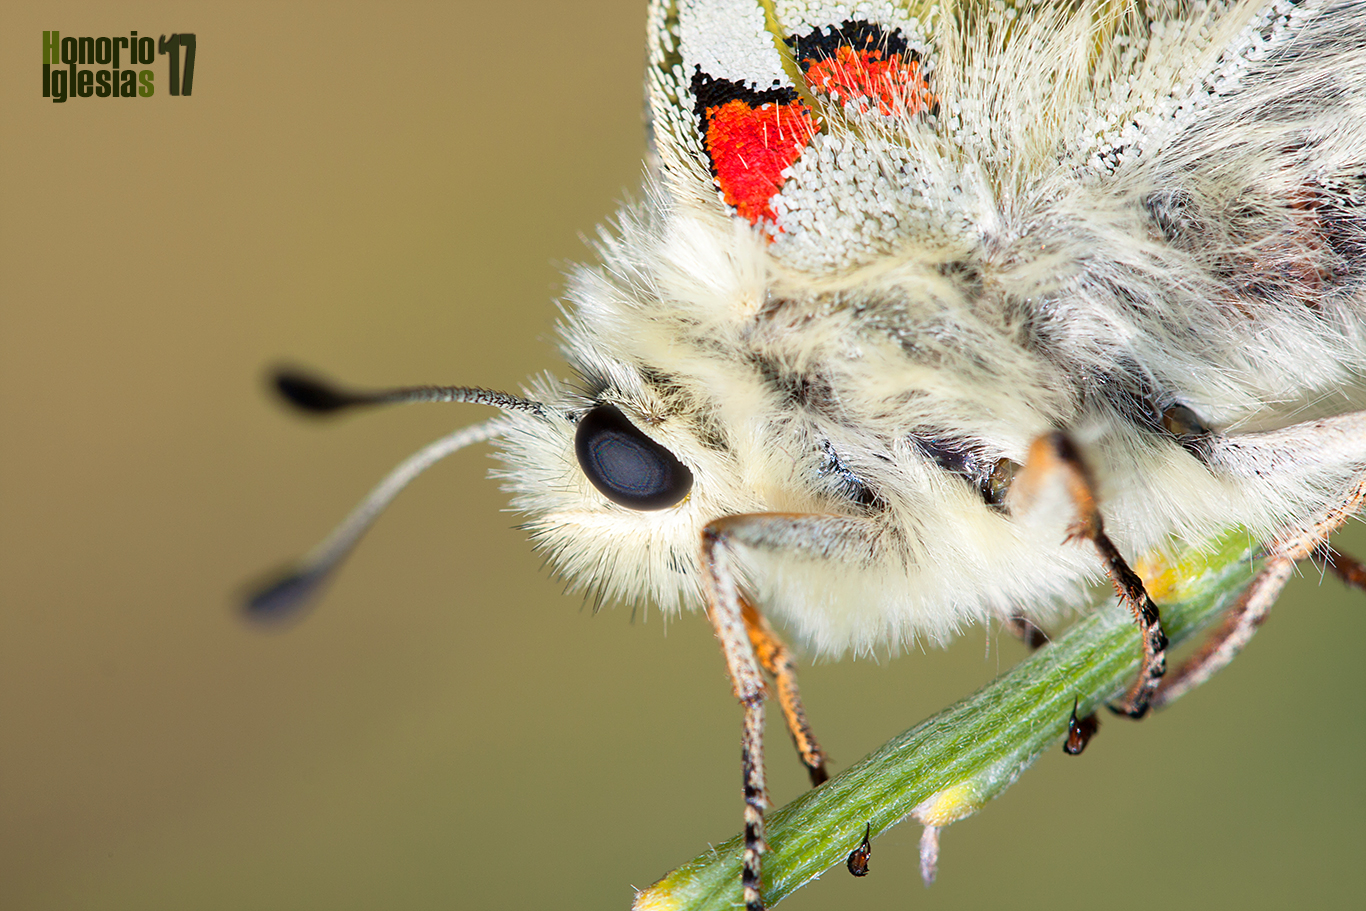 Detalle de un ejemplar de mariposa apolo (Parnassius apollo) en el que se pueden observar las escamas que recubren su cuerpo